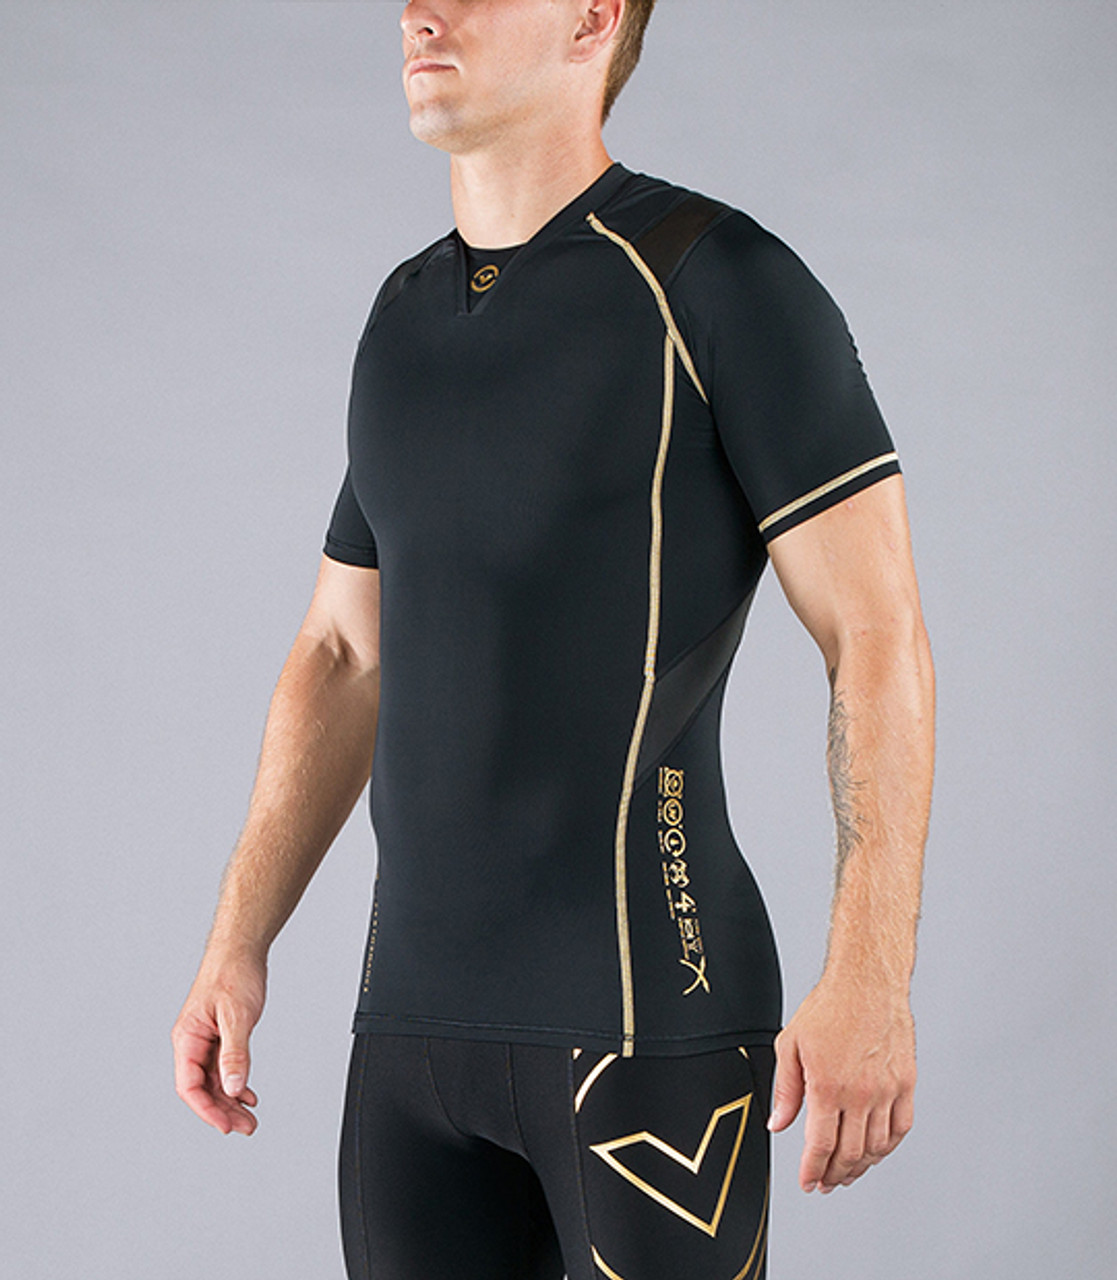 VIRUS Men's Bioceramic Short Sleeve Compression Top Black Gold T-shirt